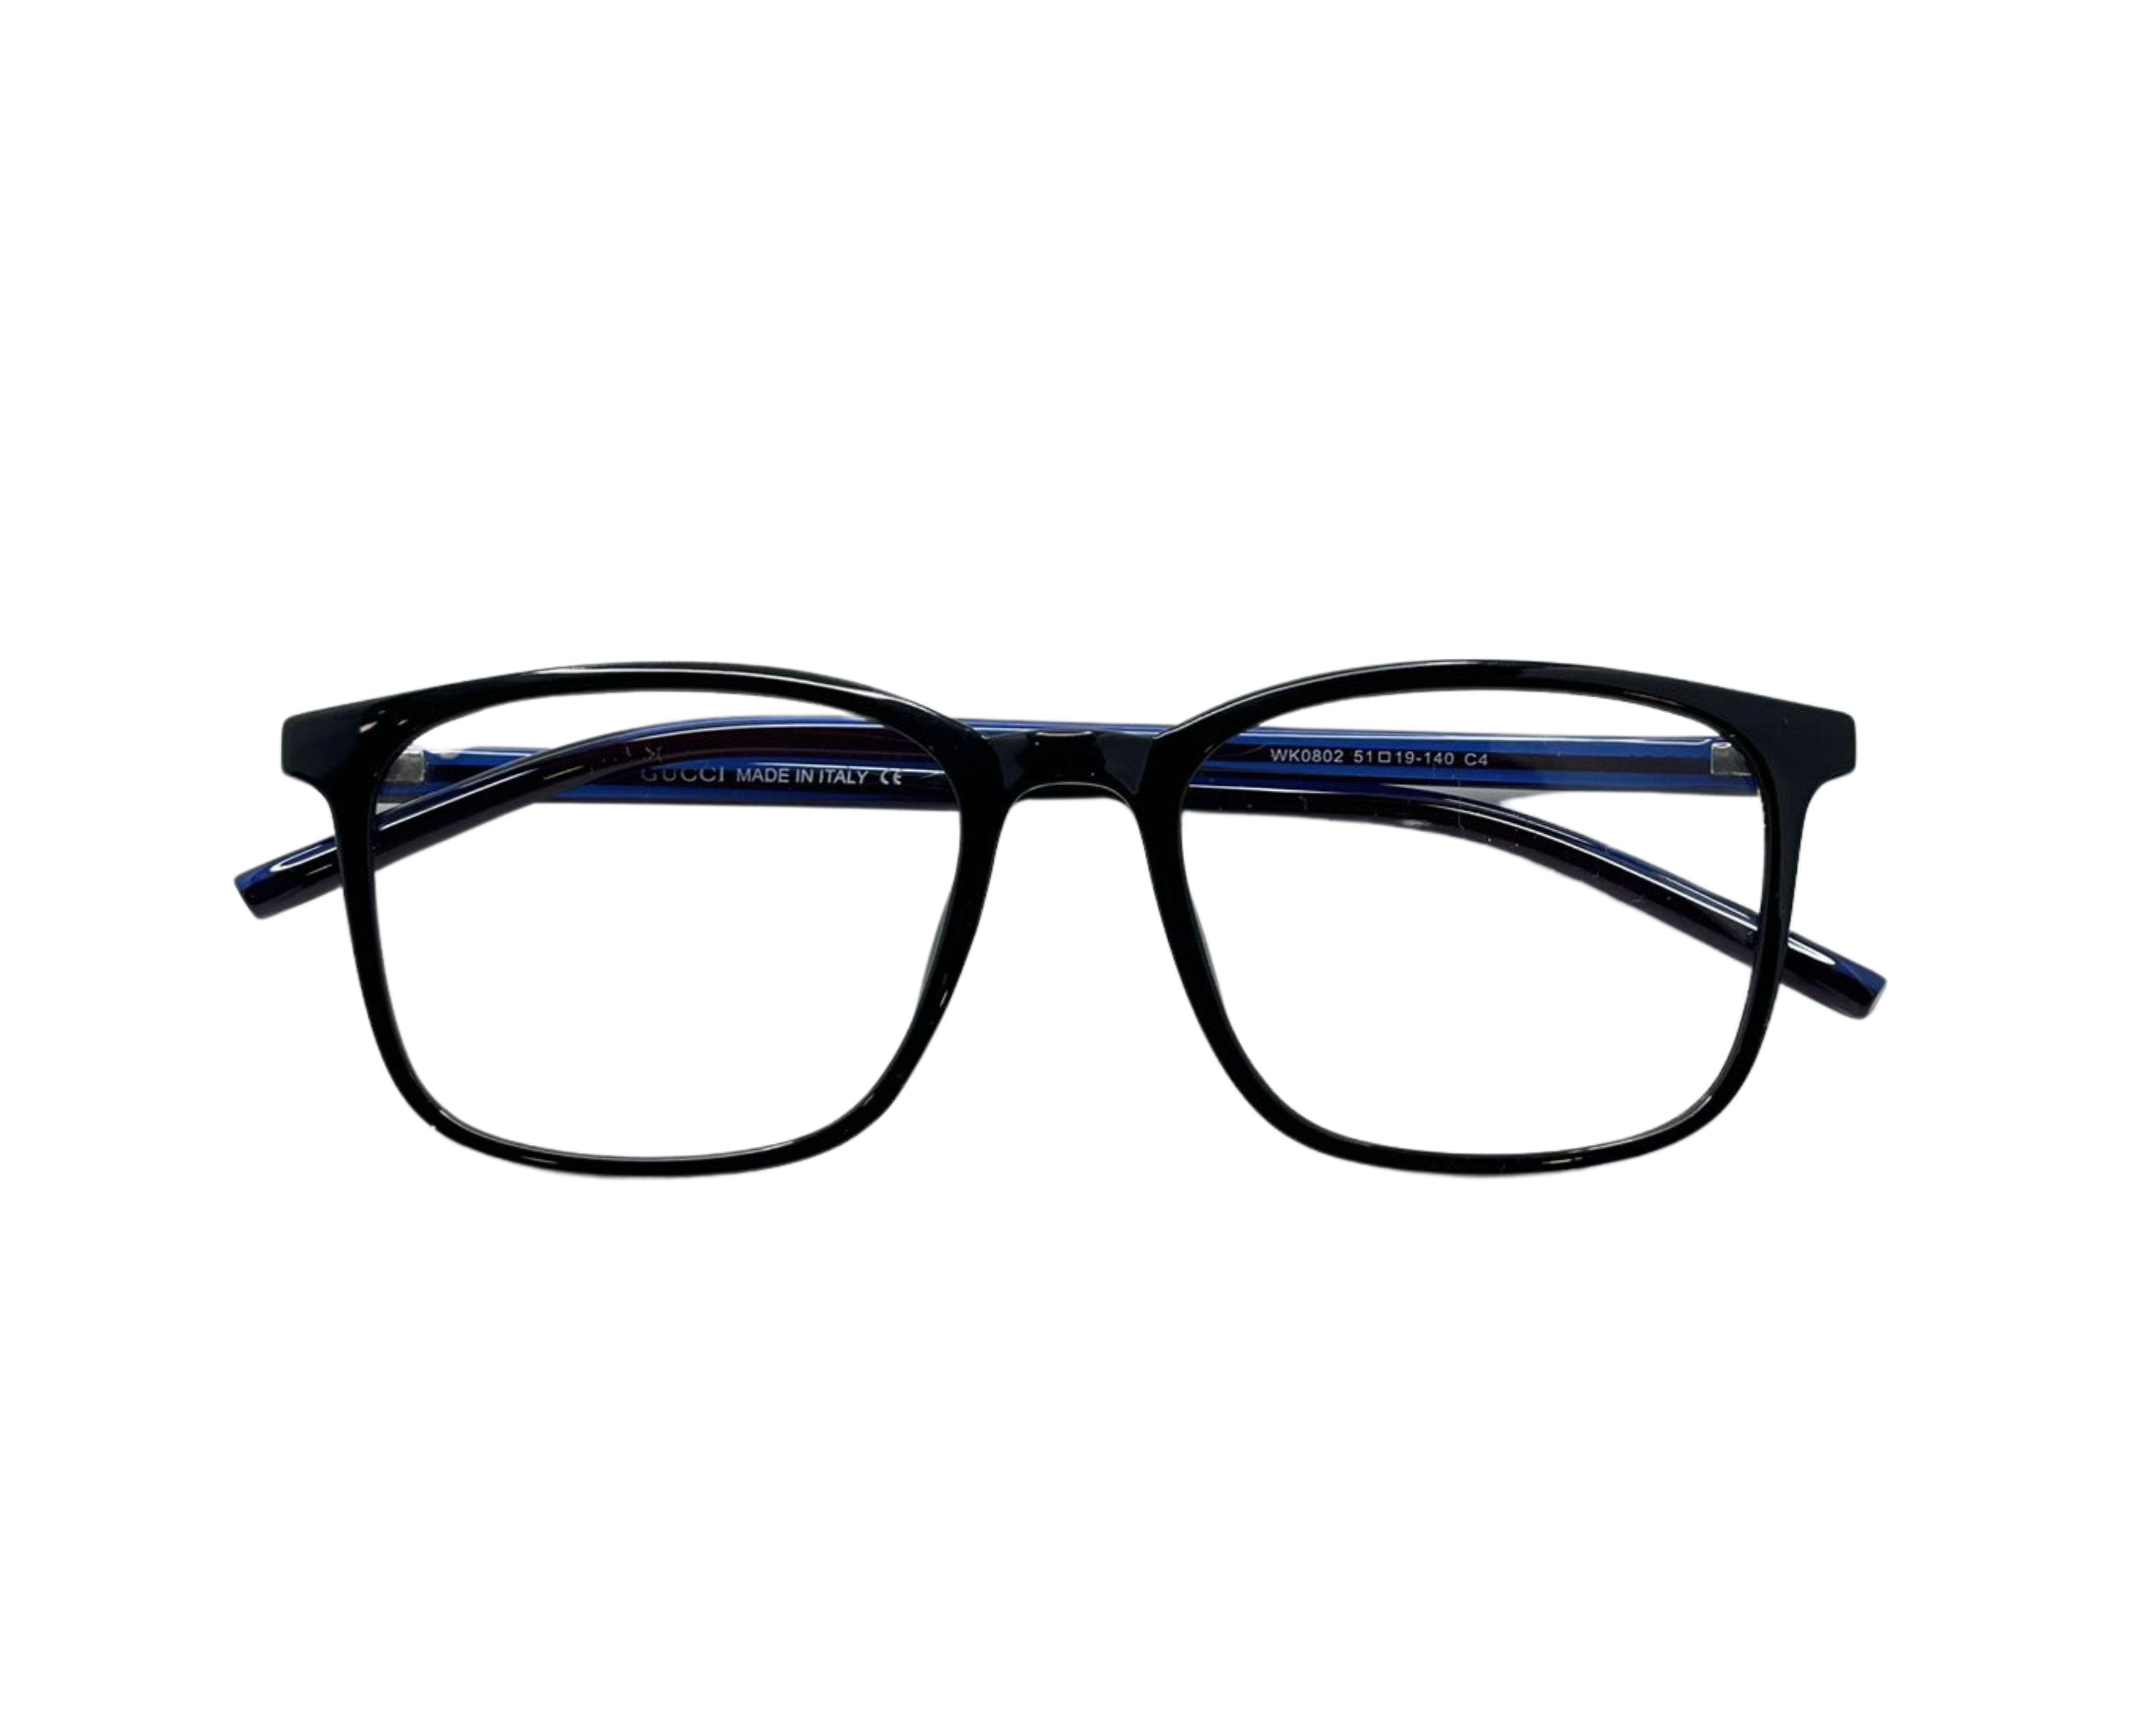  NS Classic - 0802 - Black - Eyeglasses